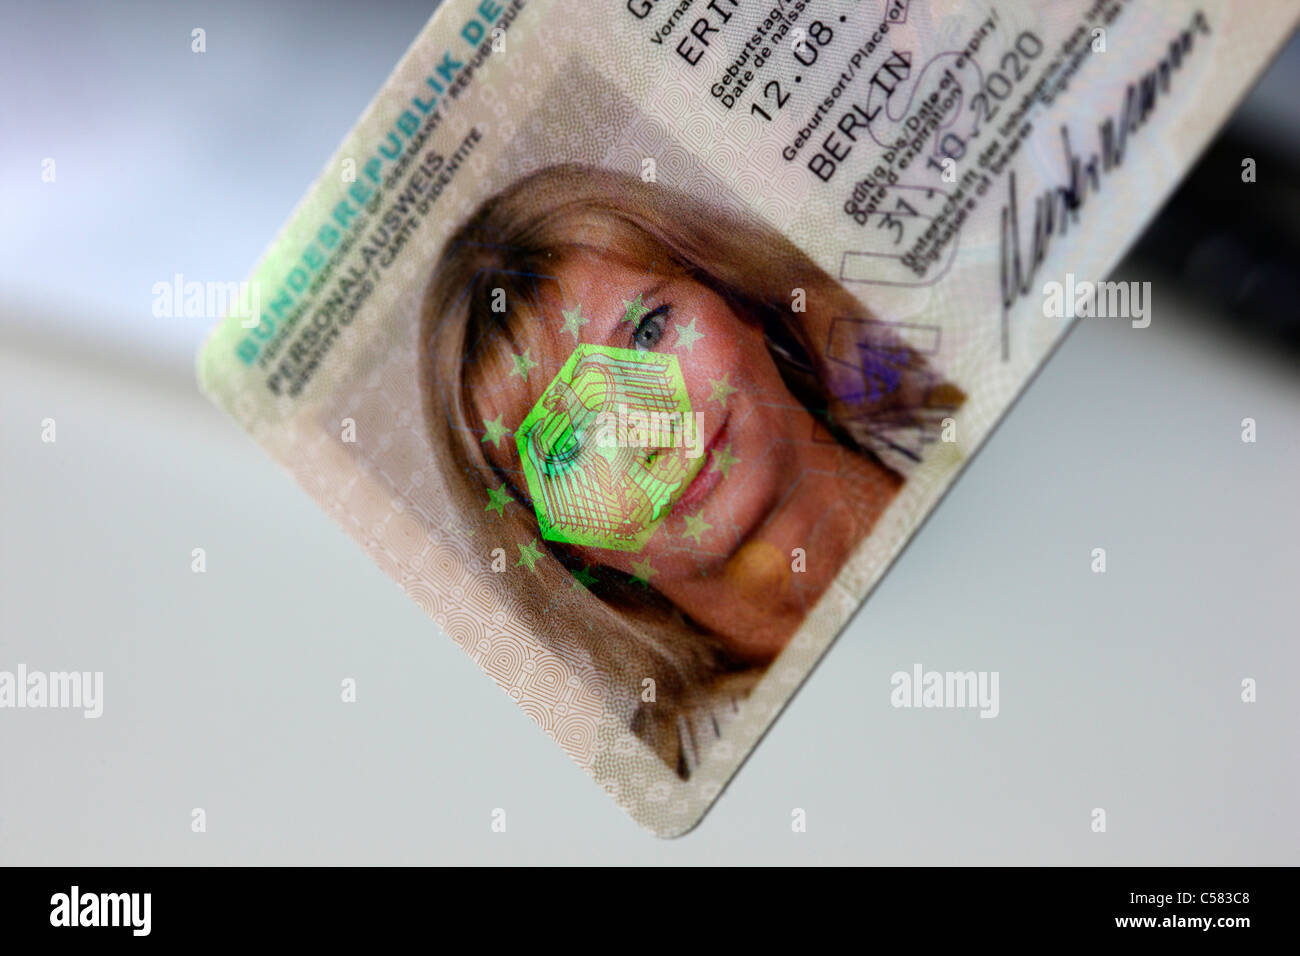 Nueva tarjeta de identificación alemanas. Con imagen holográfica y firmas de seguridad 3-D. Foto de stock